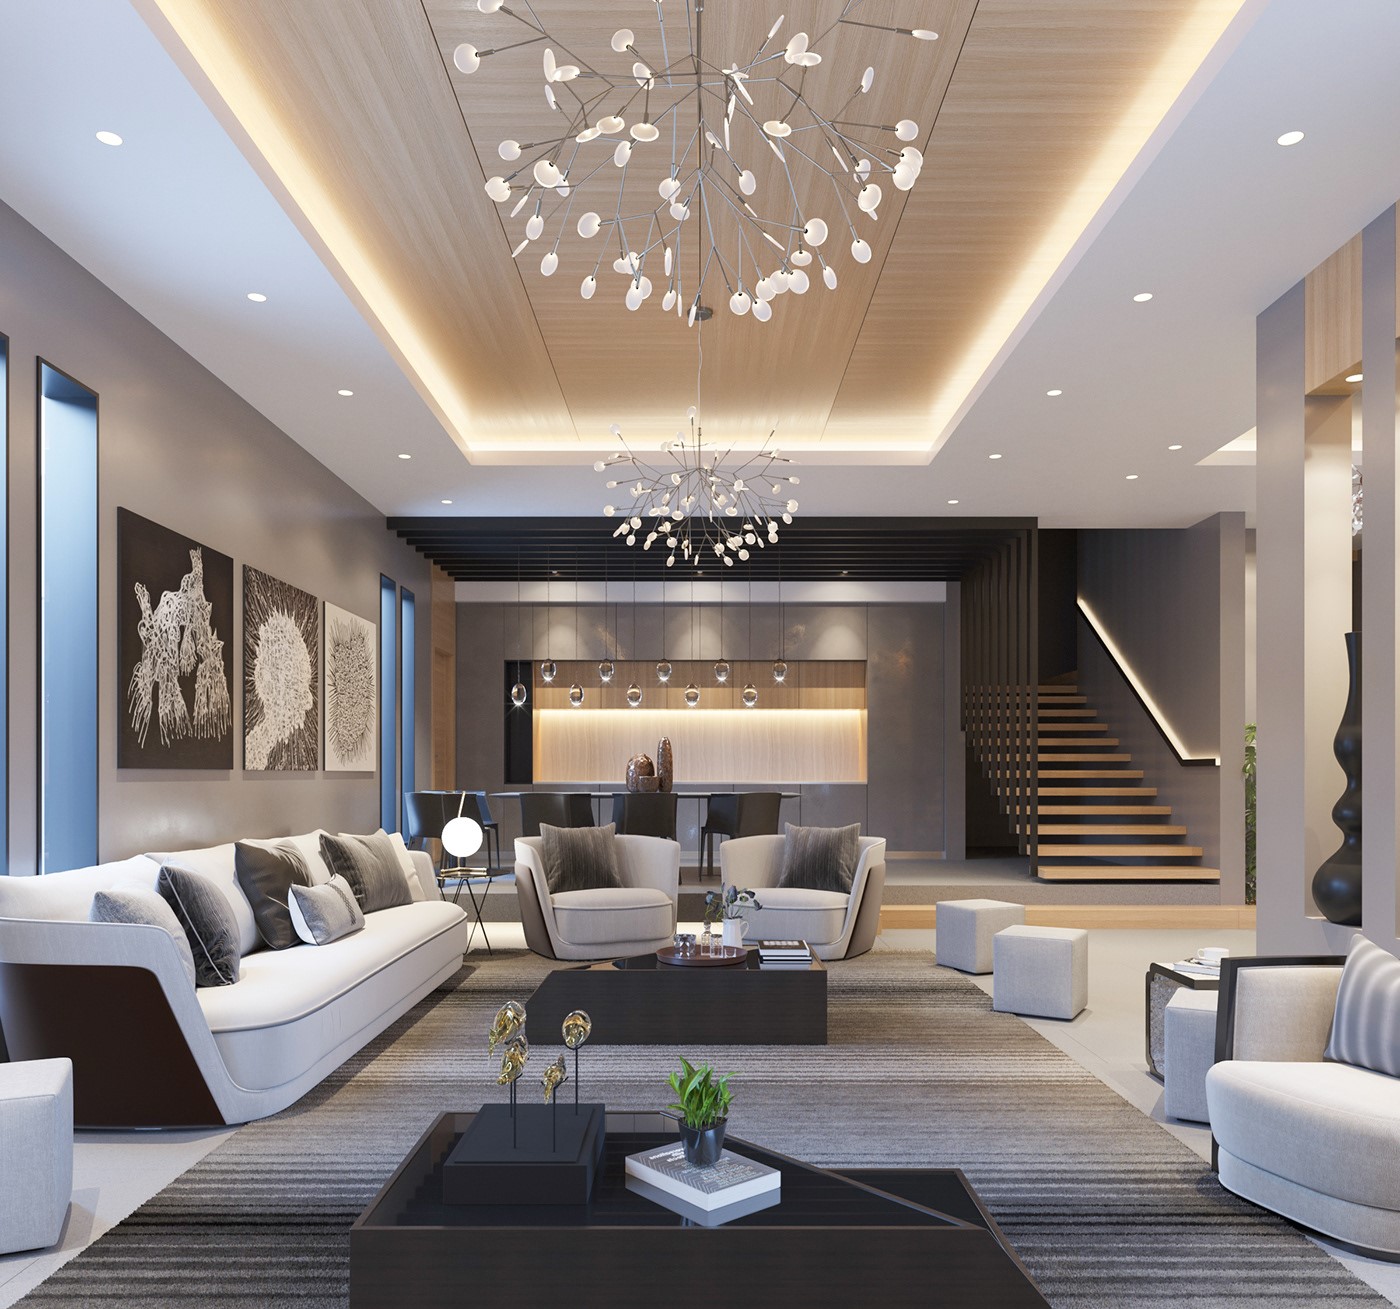 Phòng khách biệt thự 2 tầng sang trọng với bộ sofa trắng kết hợp gối tựa màu xám trung tính. Đèn chùm tạo điểm nhấn tinh tế cho toàn bộ không gian.